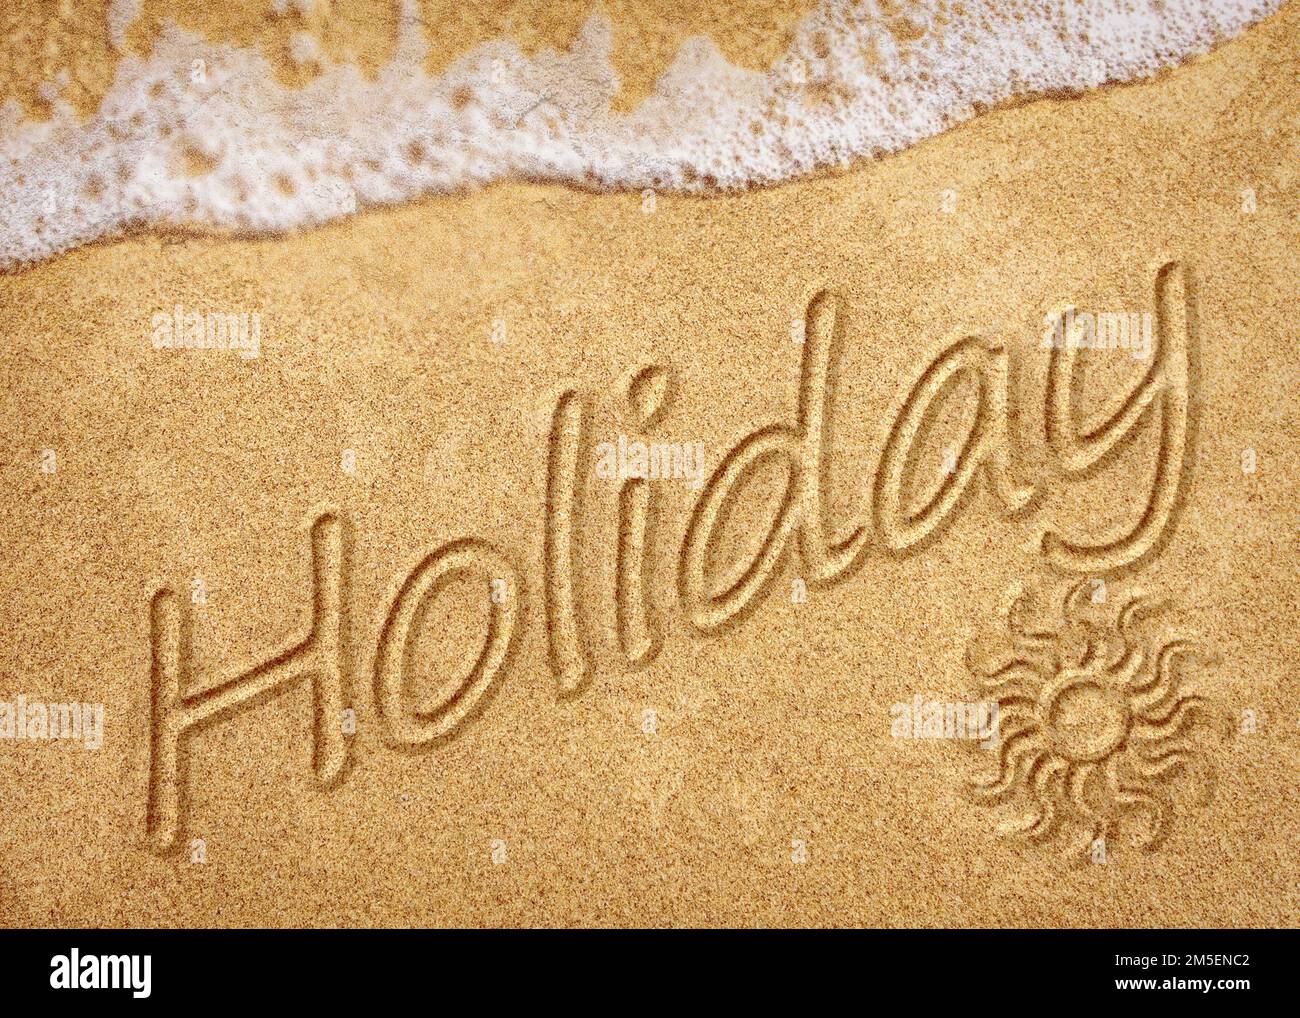 Das Wort Holiday steht auf weißem Sandstrand. Sommerurlaub, Reise- und Urlaubskonzept. Abstrakter Meeresstrand Hintergrund Stockfoto